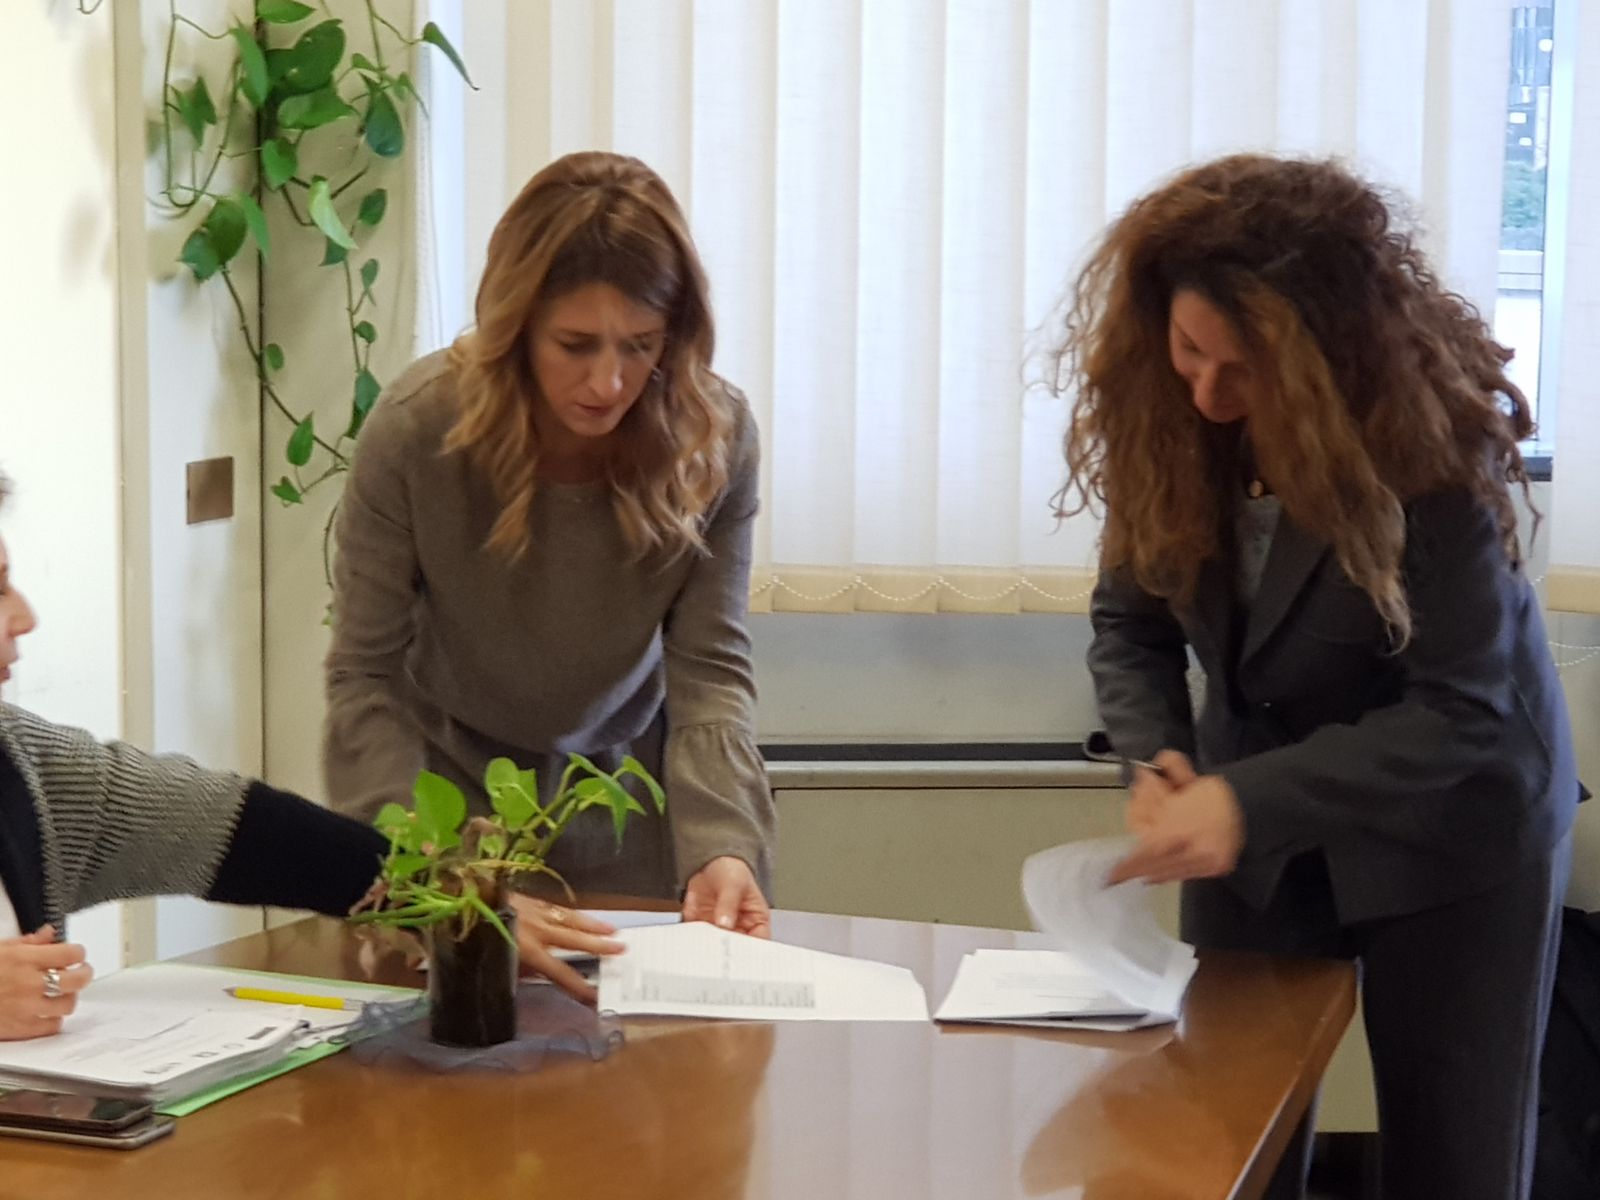  Apprendistato, Marciani: “siglati due accordi tra regione Campania e Parti Sociali su formazione apprendisti